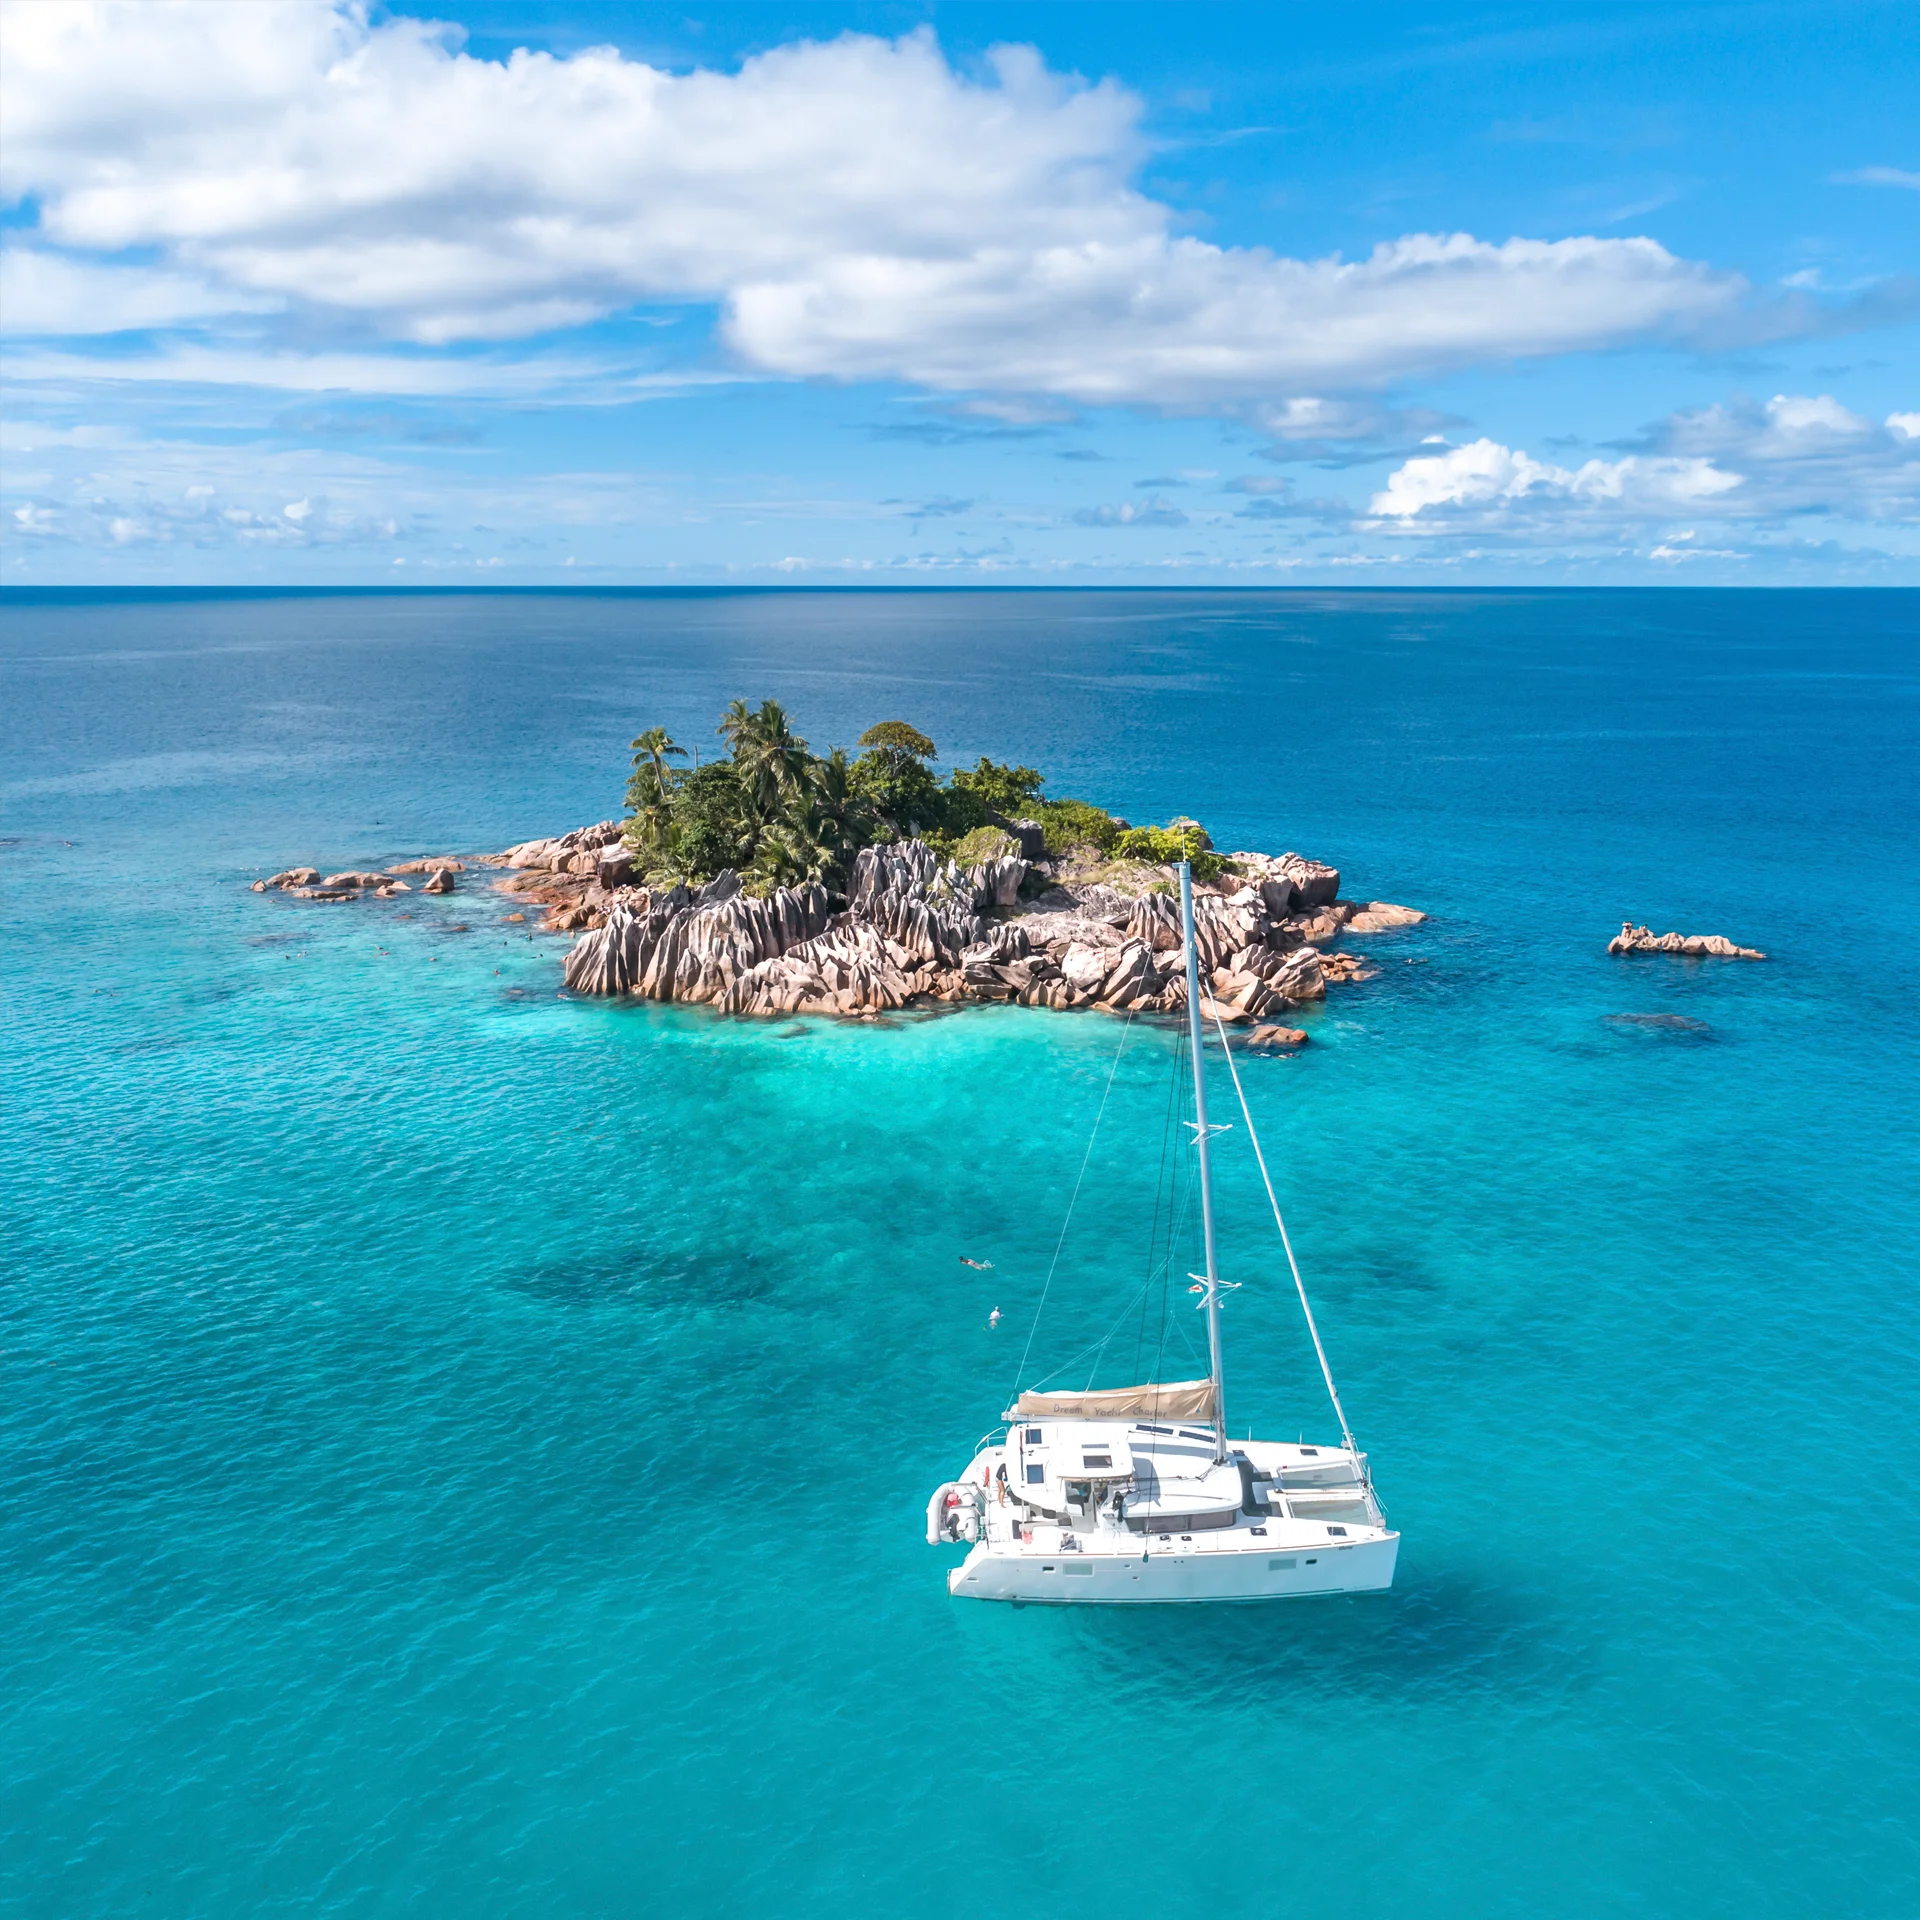 Crociera in catamarano sulle acque cristalline delle Seychelles